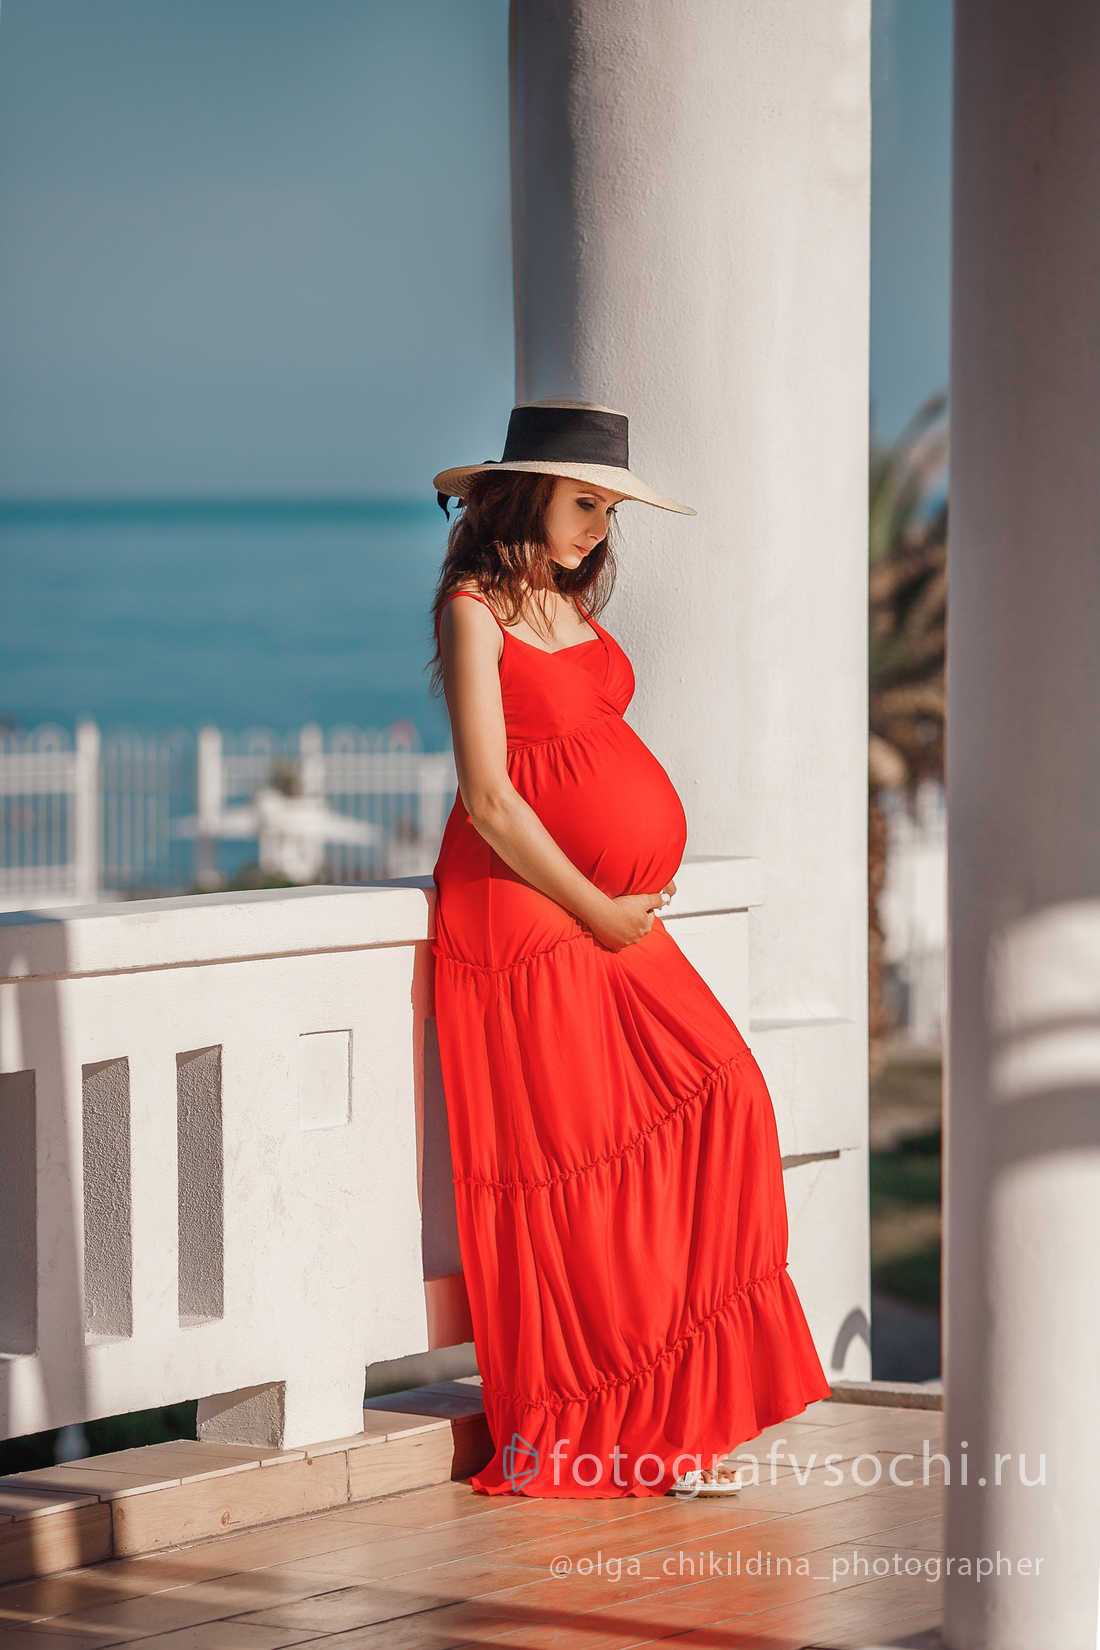 Беременная девушка в шляпке и красном платье на фоне белой колонны и моря